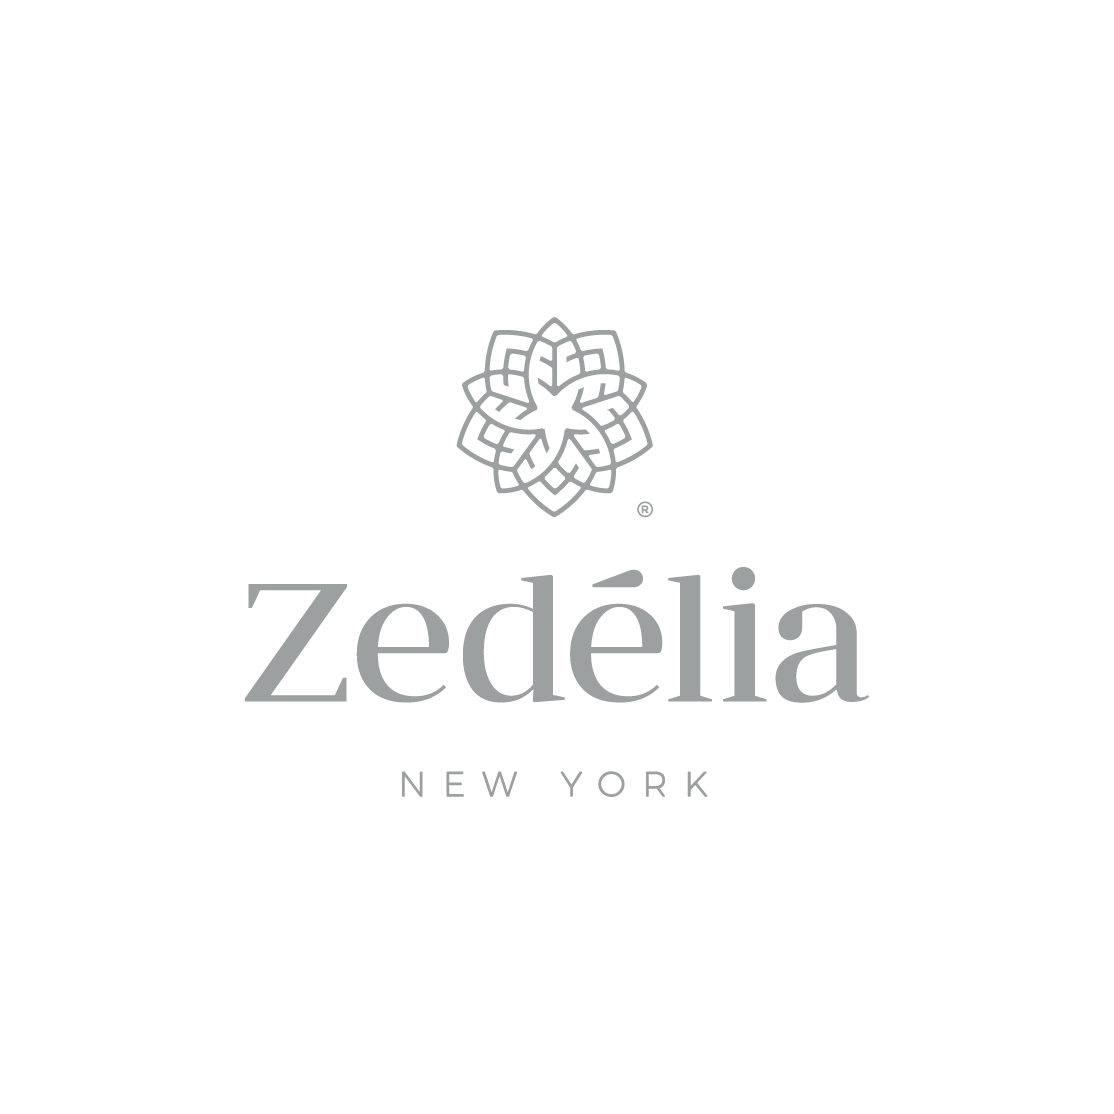 Zedélia